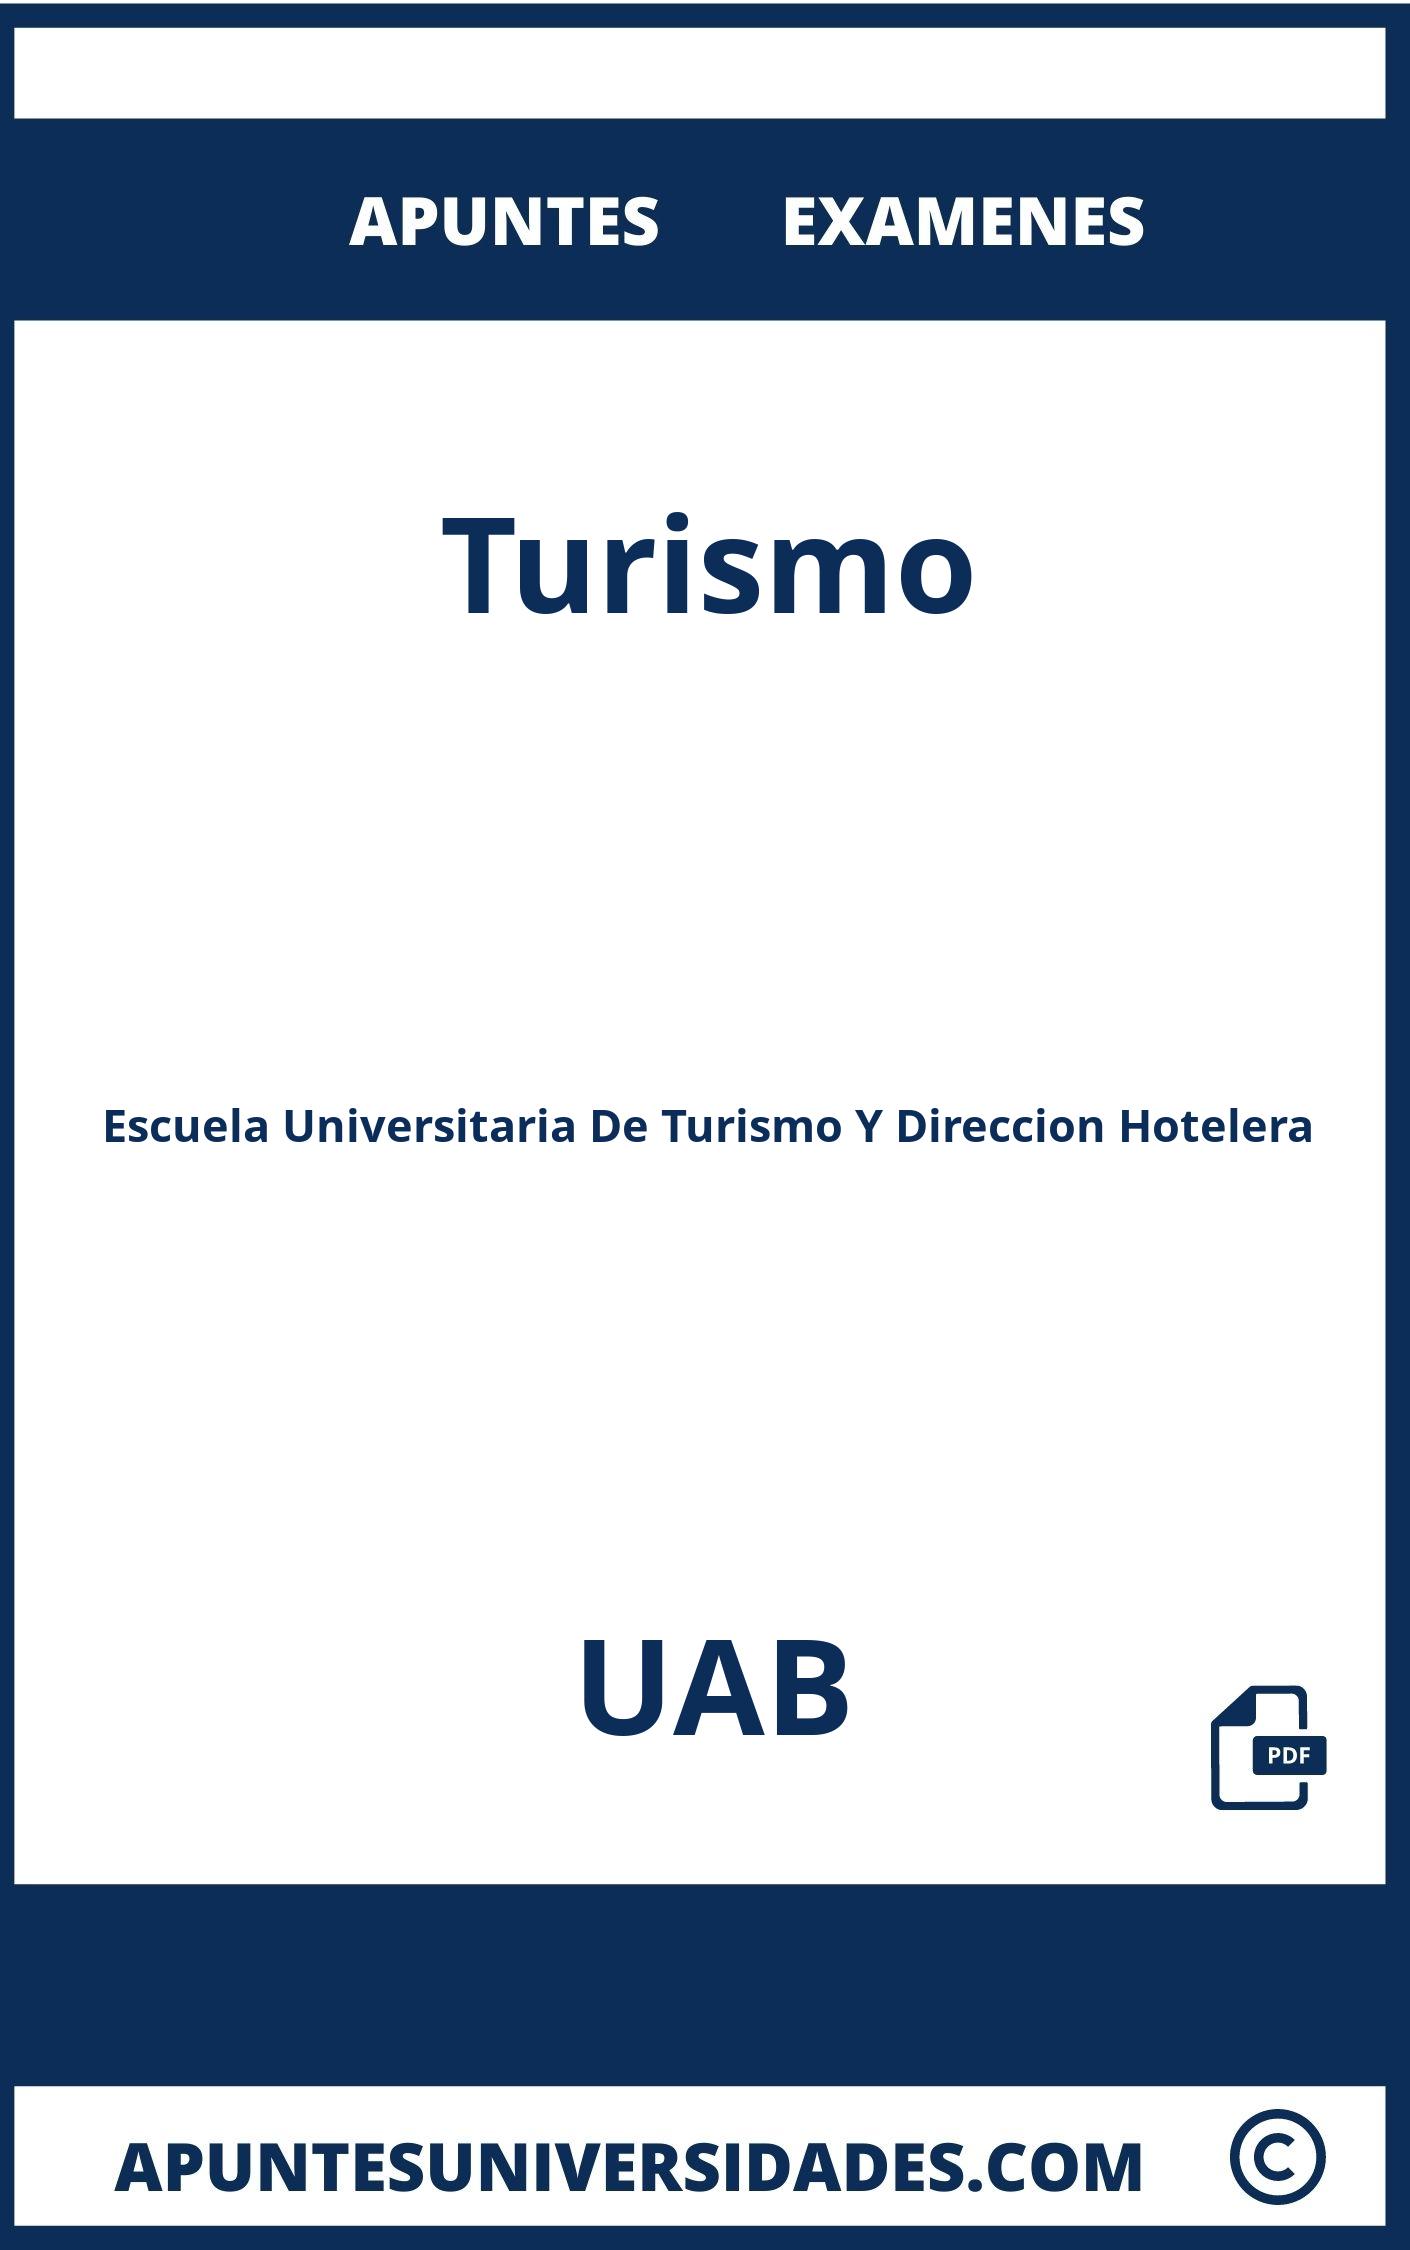 Examenes y Apuntes Turismo UAB